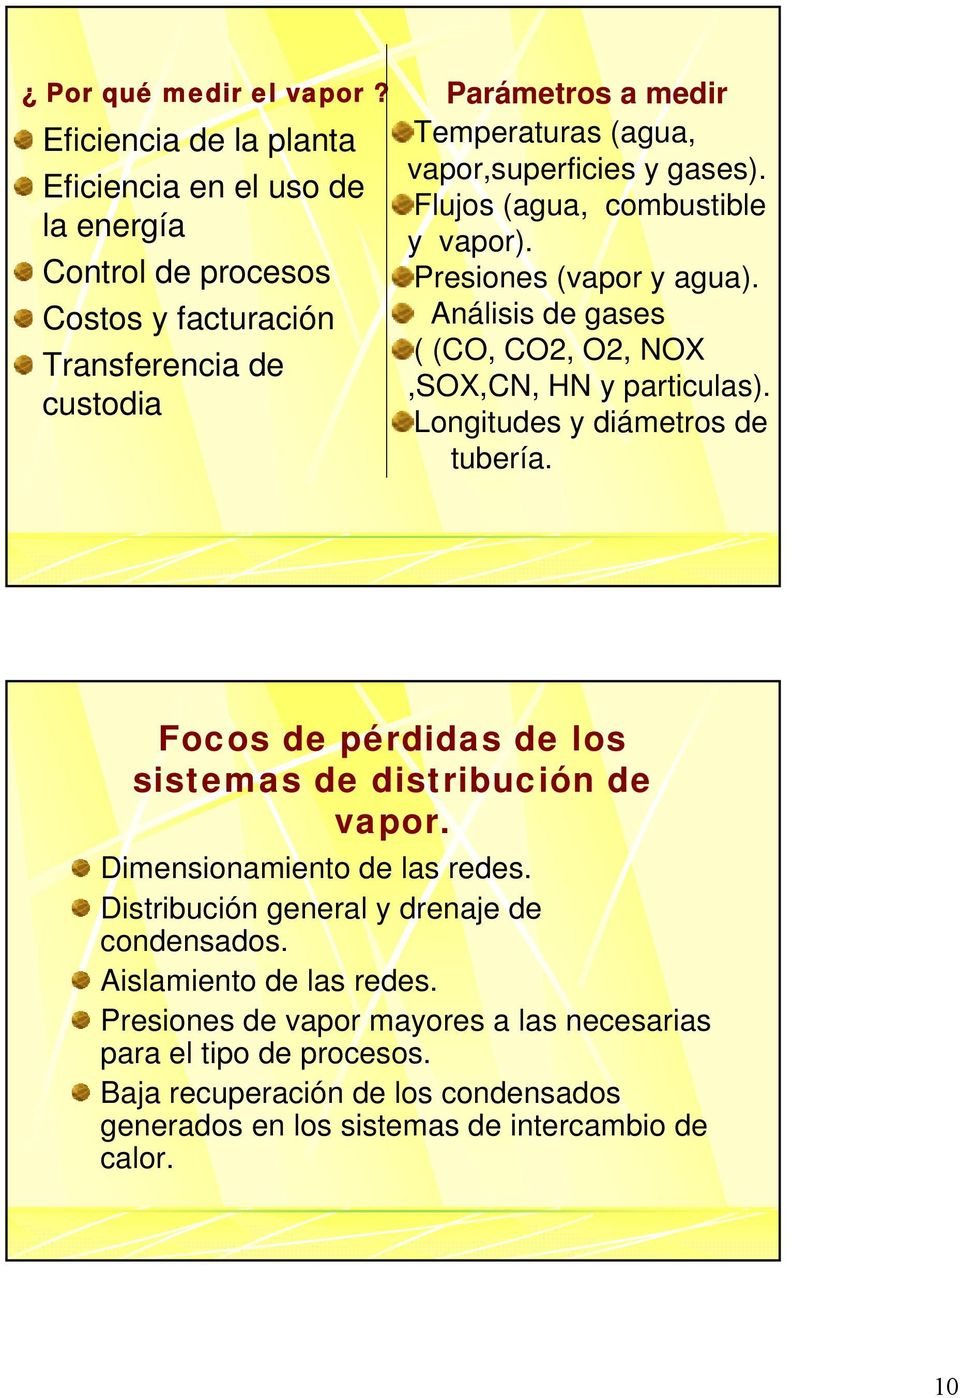 Costos y facturación Análisis de gases ( (CO, CO, O, NOX Transferencia de,sox,cn, HN y particulas). custodia Longitudes y diámetros de tubería.